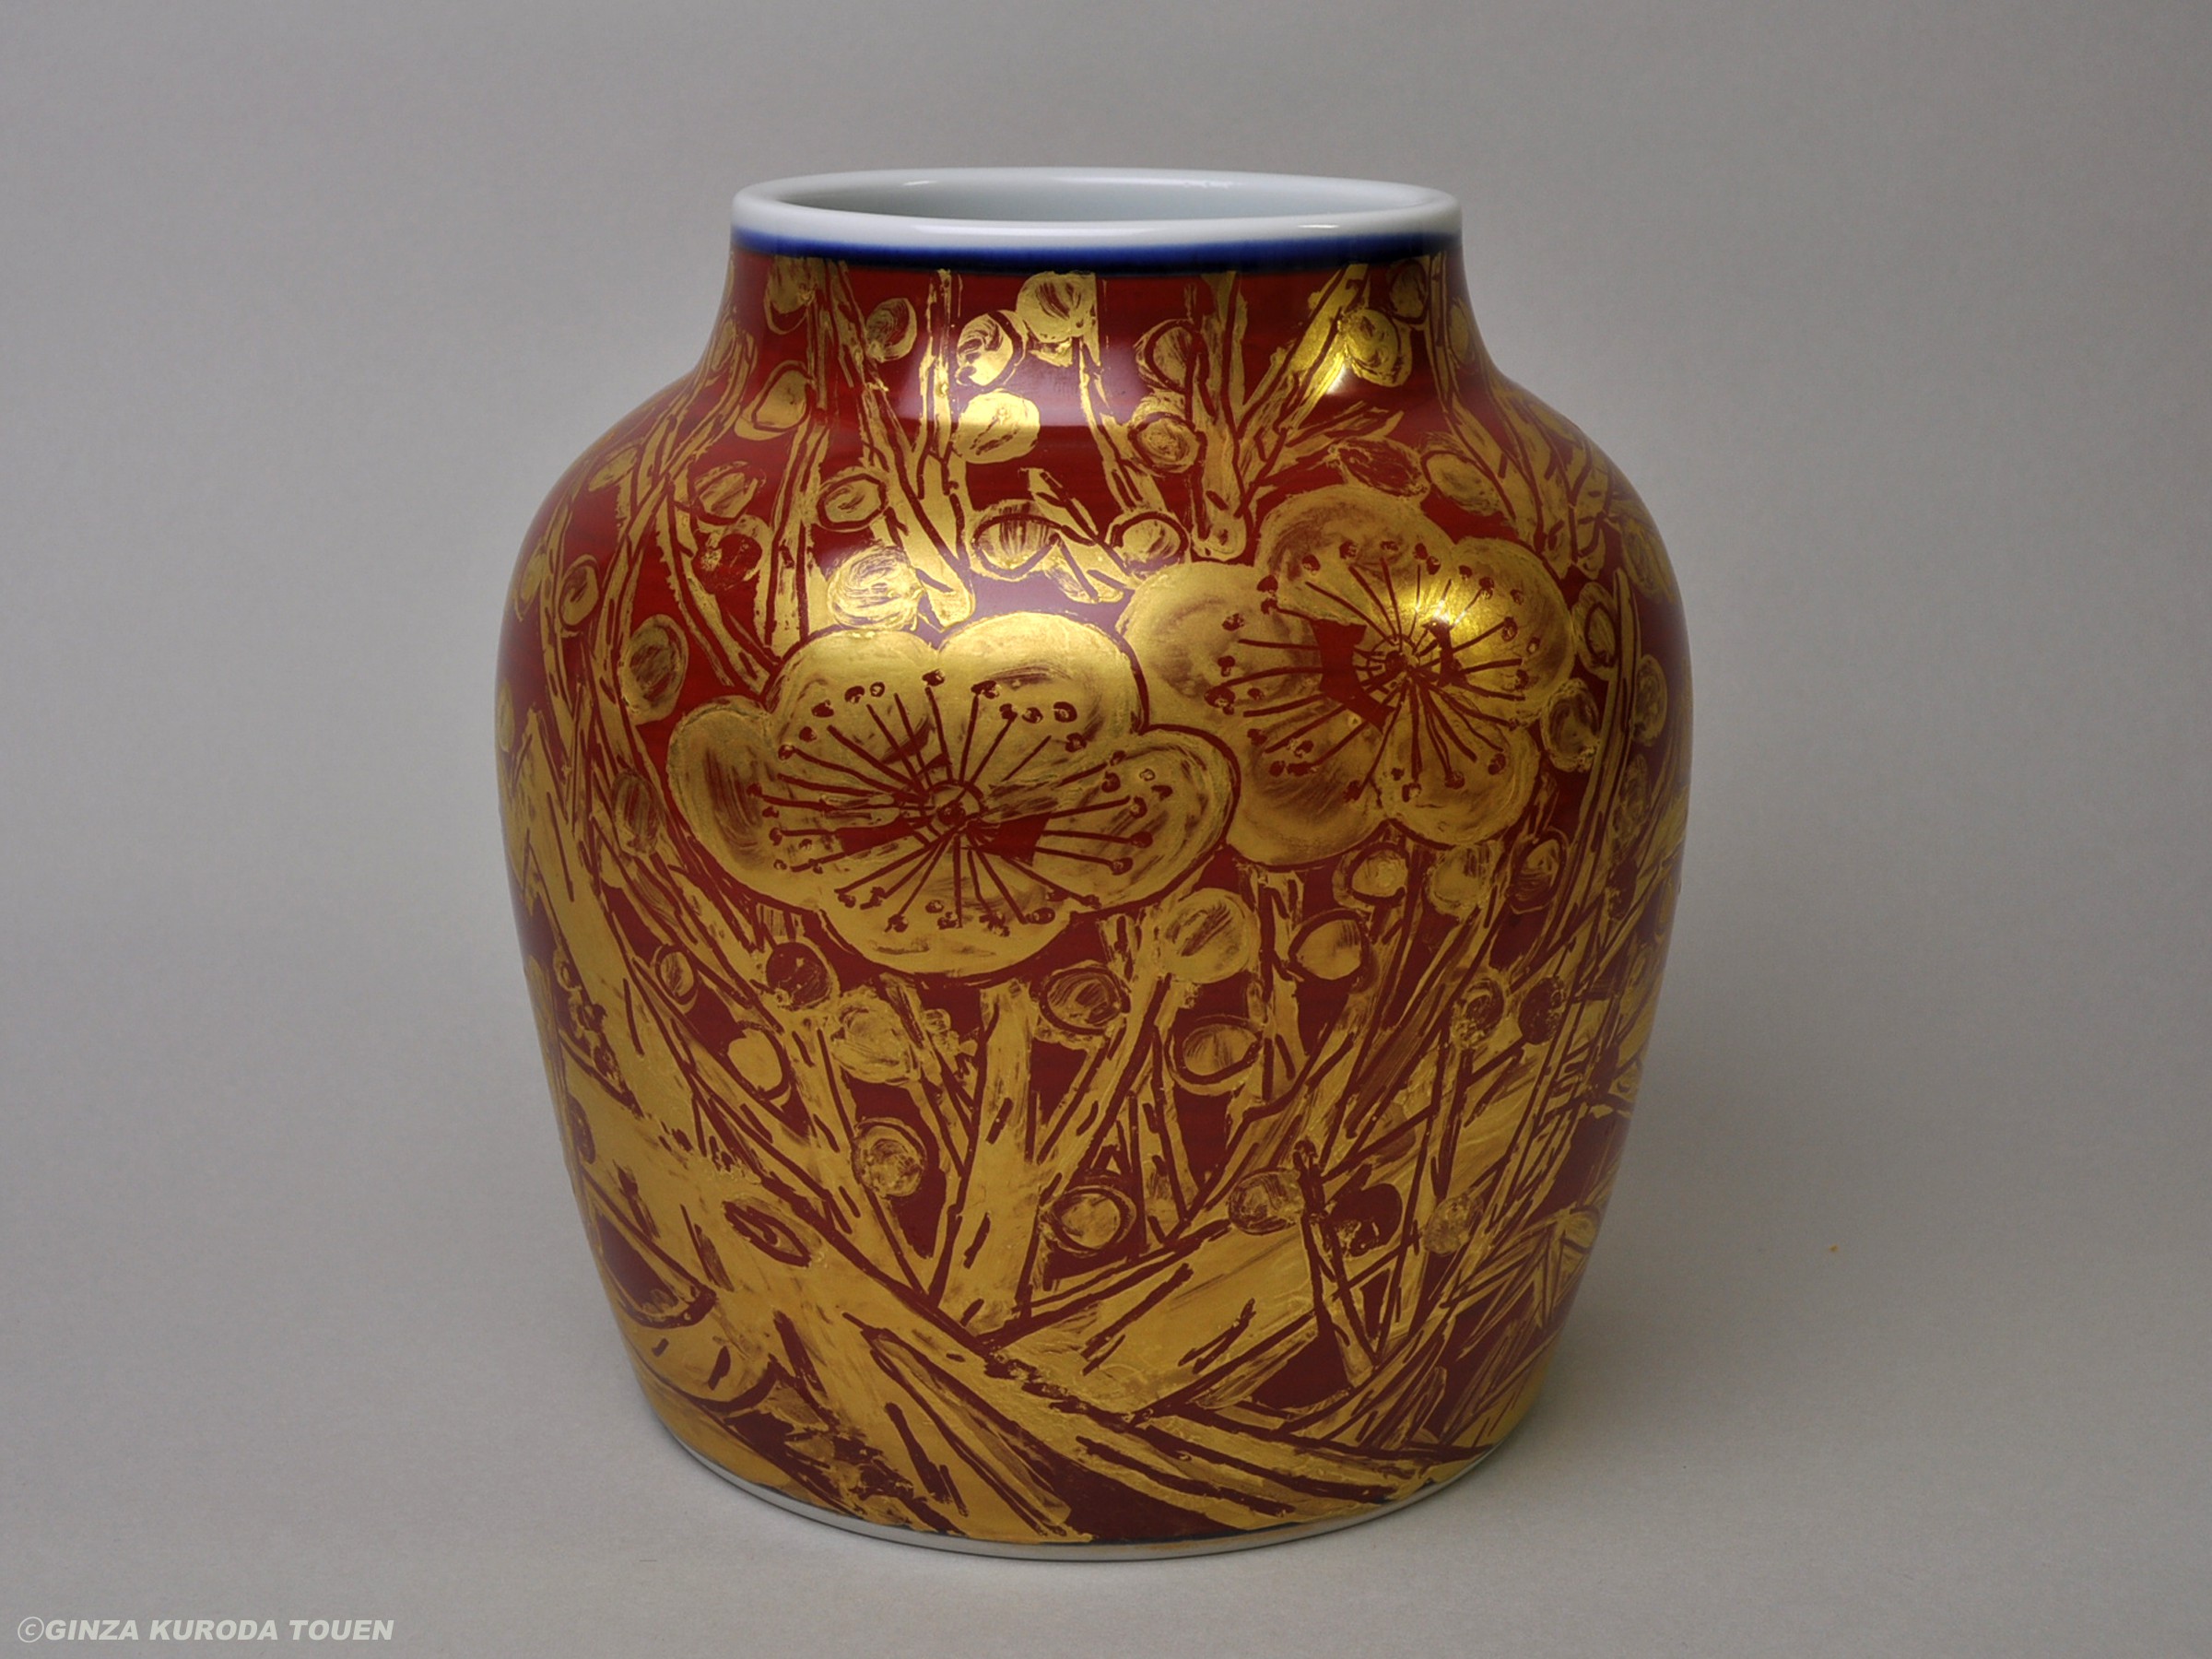 Yuzo Kondo: Flower vase, Gold painting, Japanese apricot design